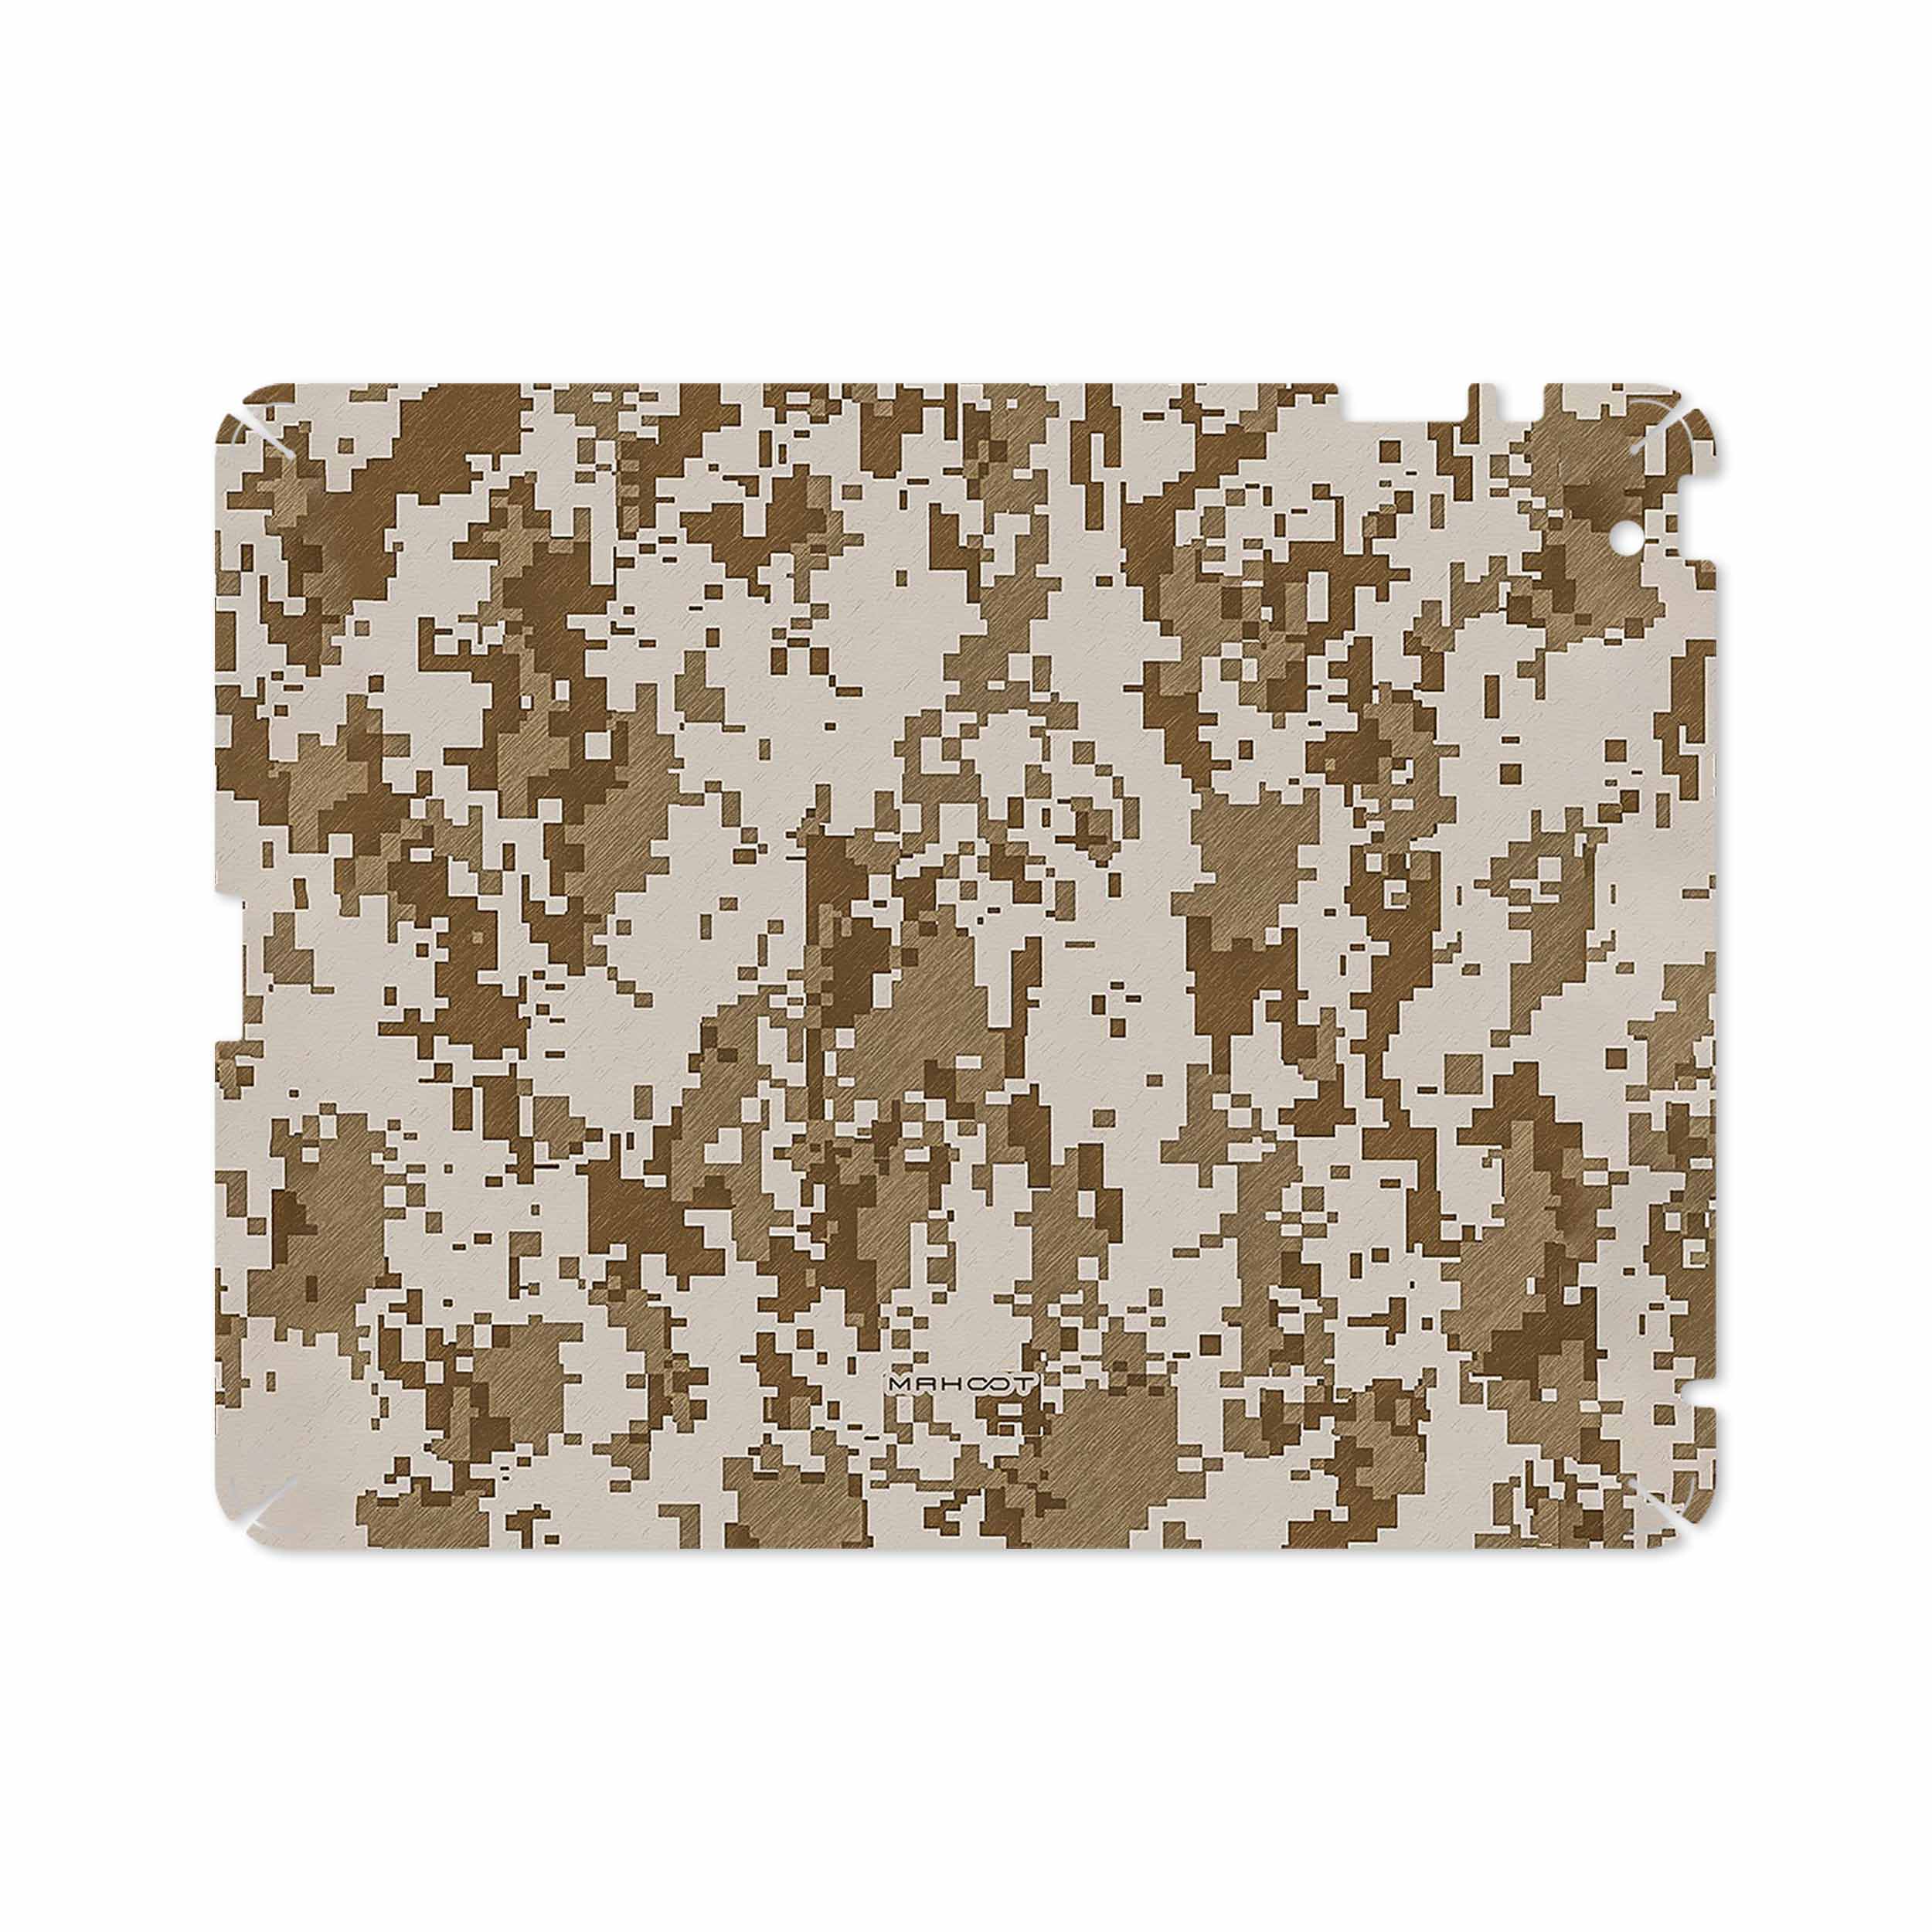 برچسب پوششی ماهوت مدل Army-Desert-Pixel مناسب برای تبلت اپل iPad 2 2011 A1395